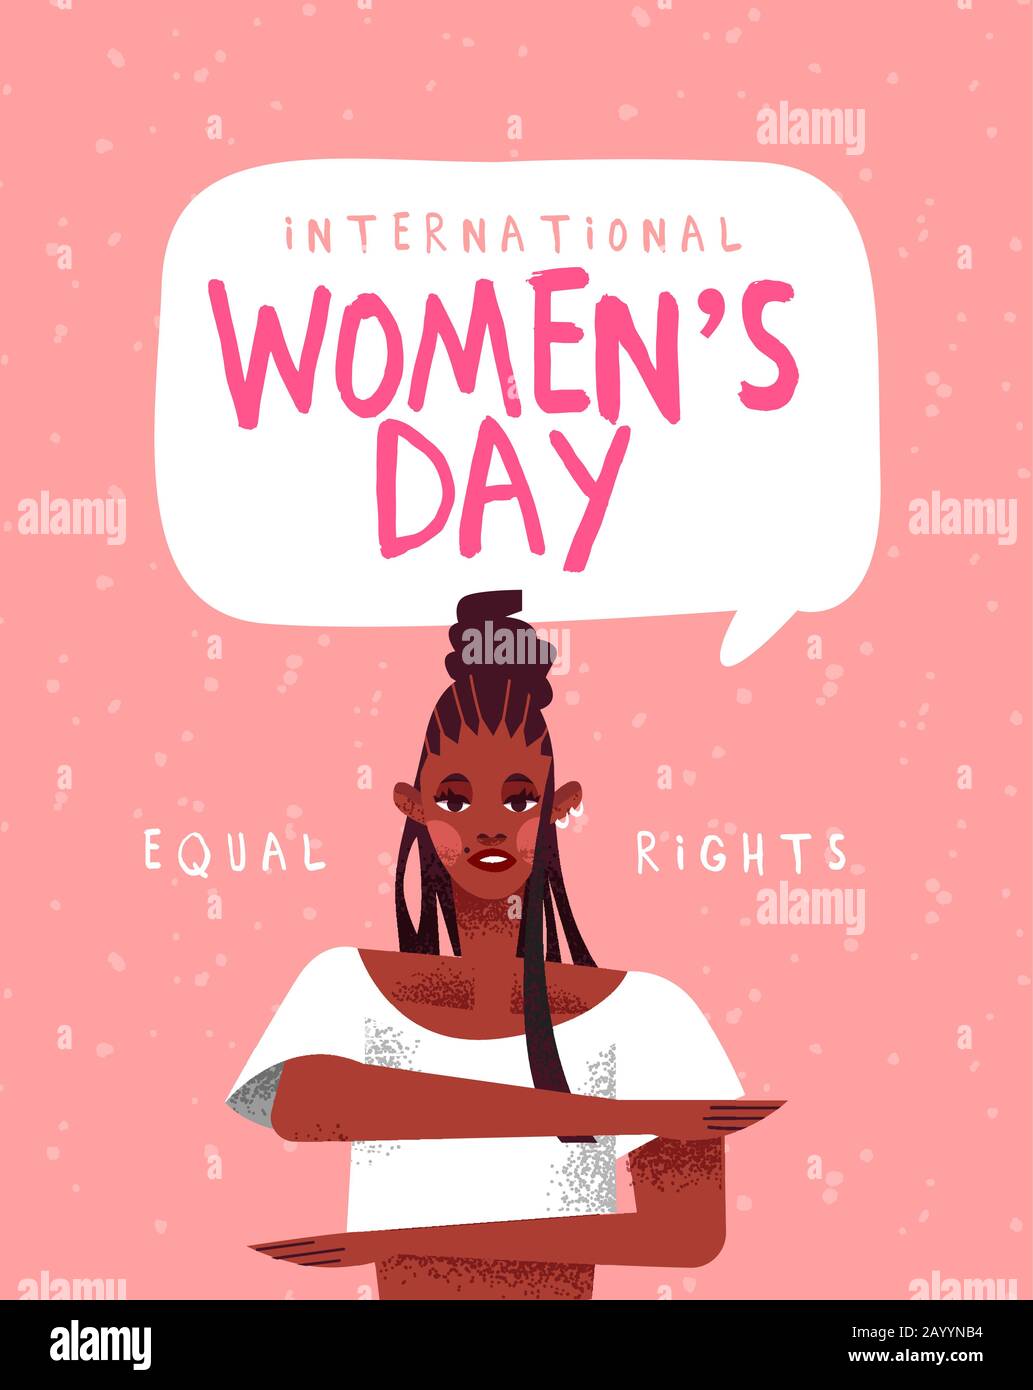 Internationale Grußkarte Für Den Frauentag. Frauenaktivistin, die Gleichheitsgeste für Gleichberechtigung macht und Frauen Veranstaltung in handgezeichneter Cartoon-Manier ausstellt. Stock Vektor